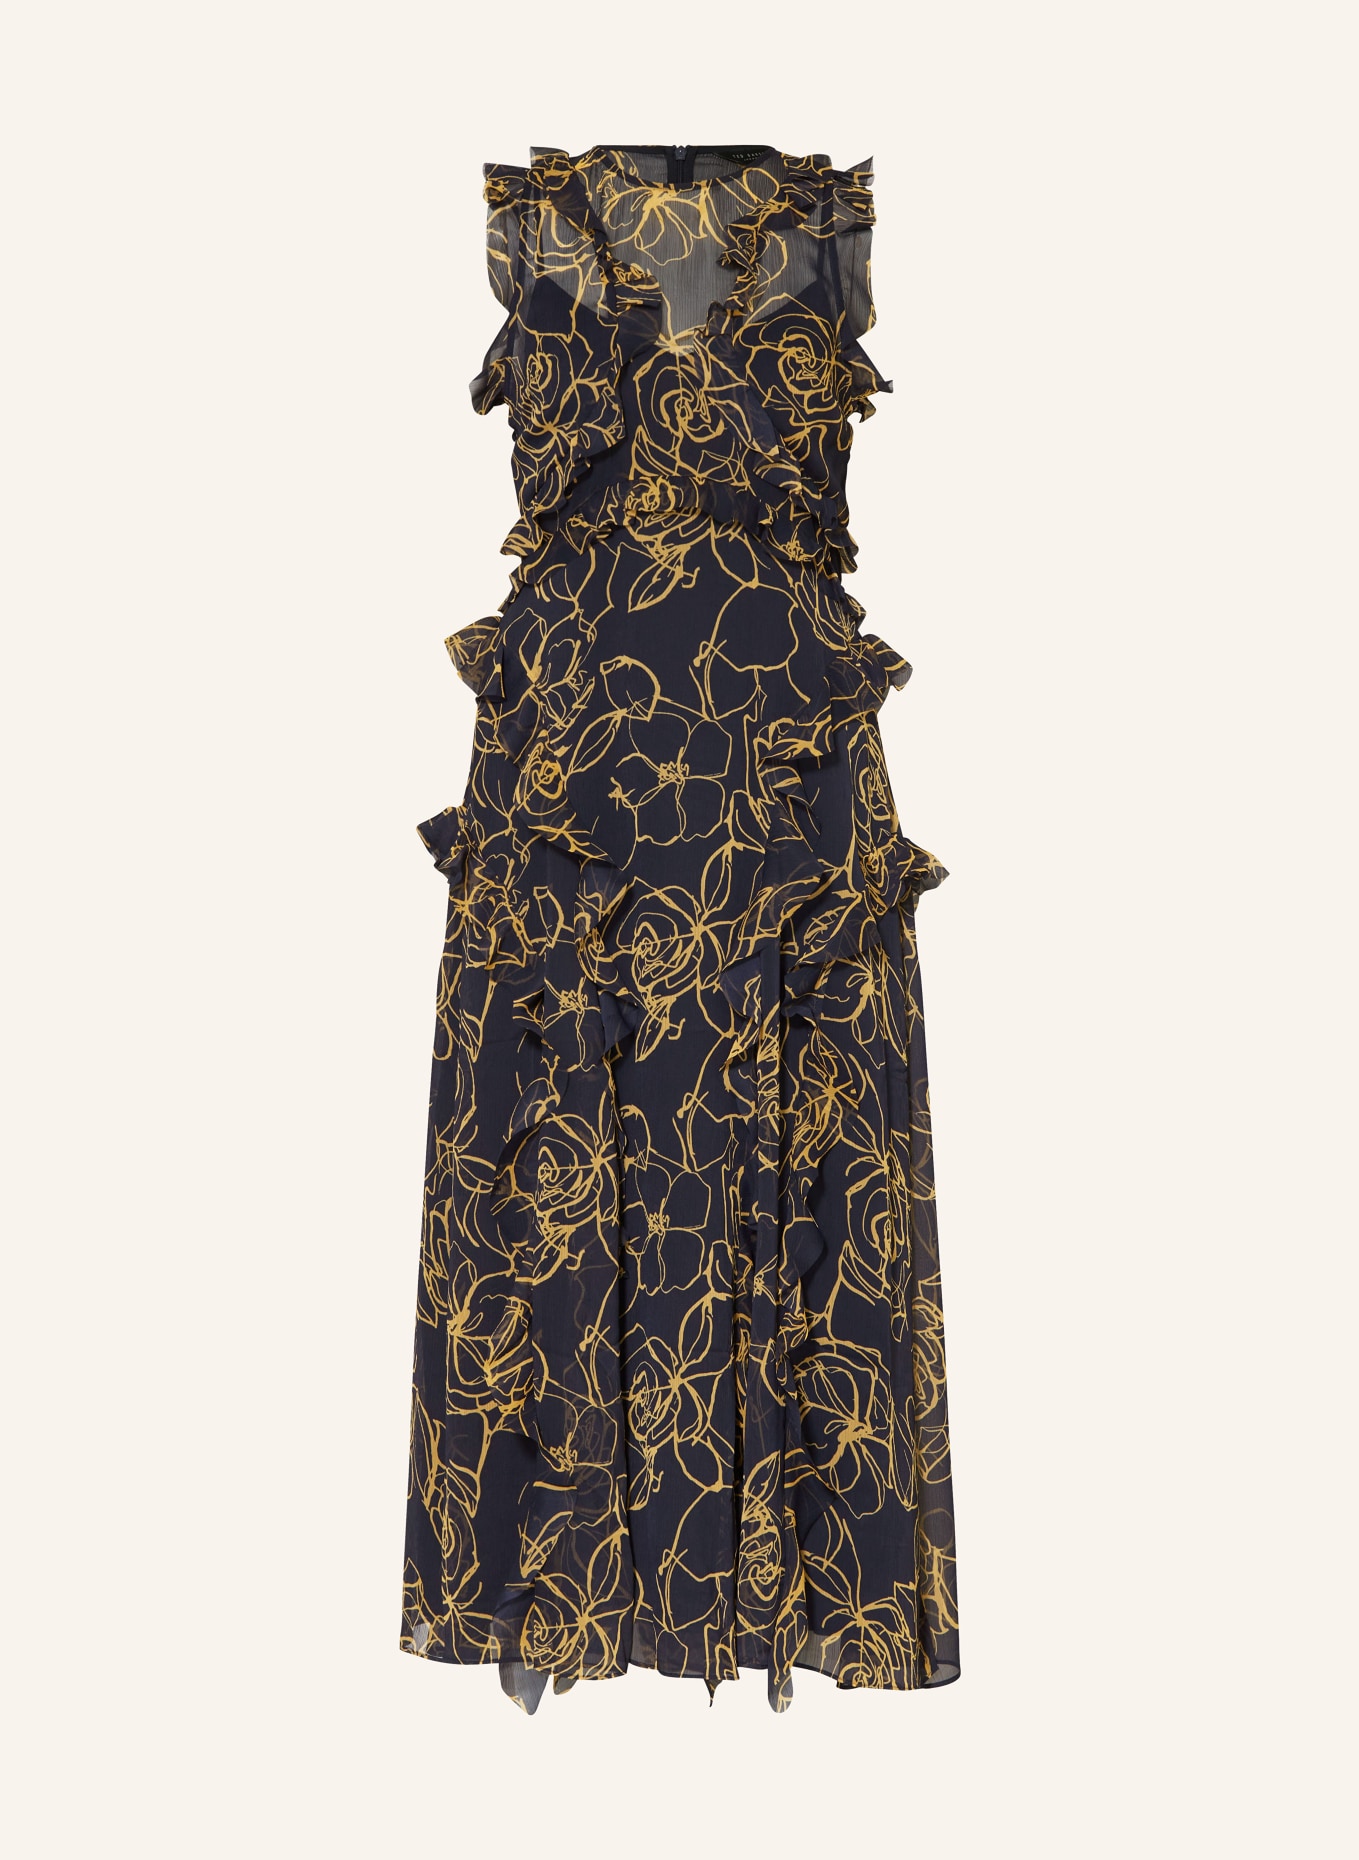 TED BAKER Kleid RIZE mit Rüschen, Farbe: DUNKELBLAU/ DUNKELGELB (Bild 1)